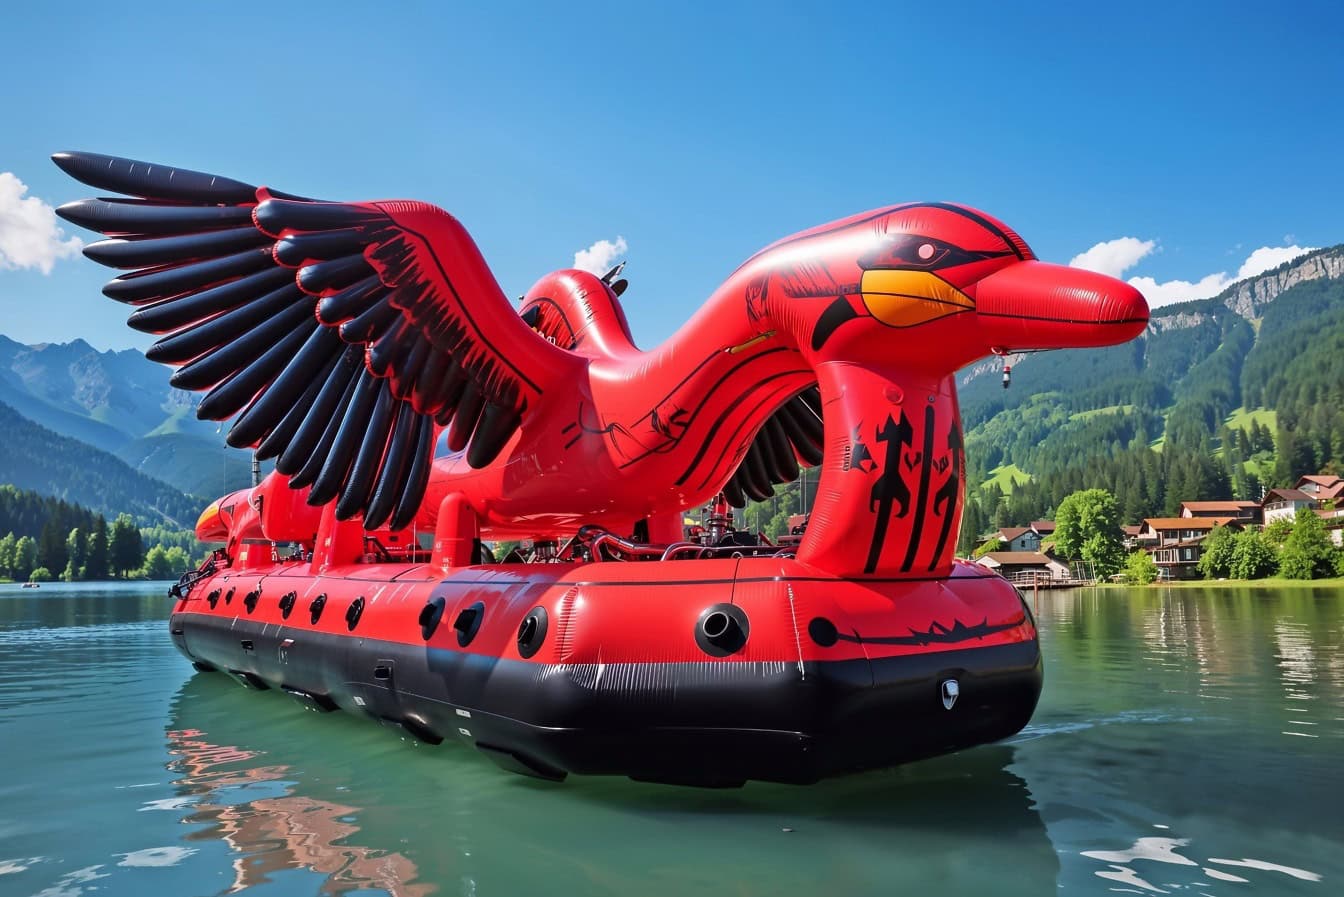 Opblaasbaar vlot in de vorm van een rood-zwarte vogel die op water drijft